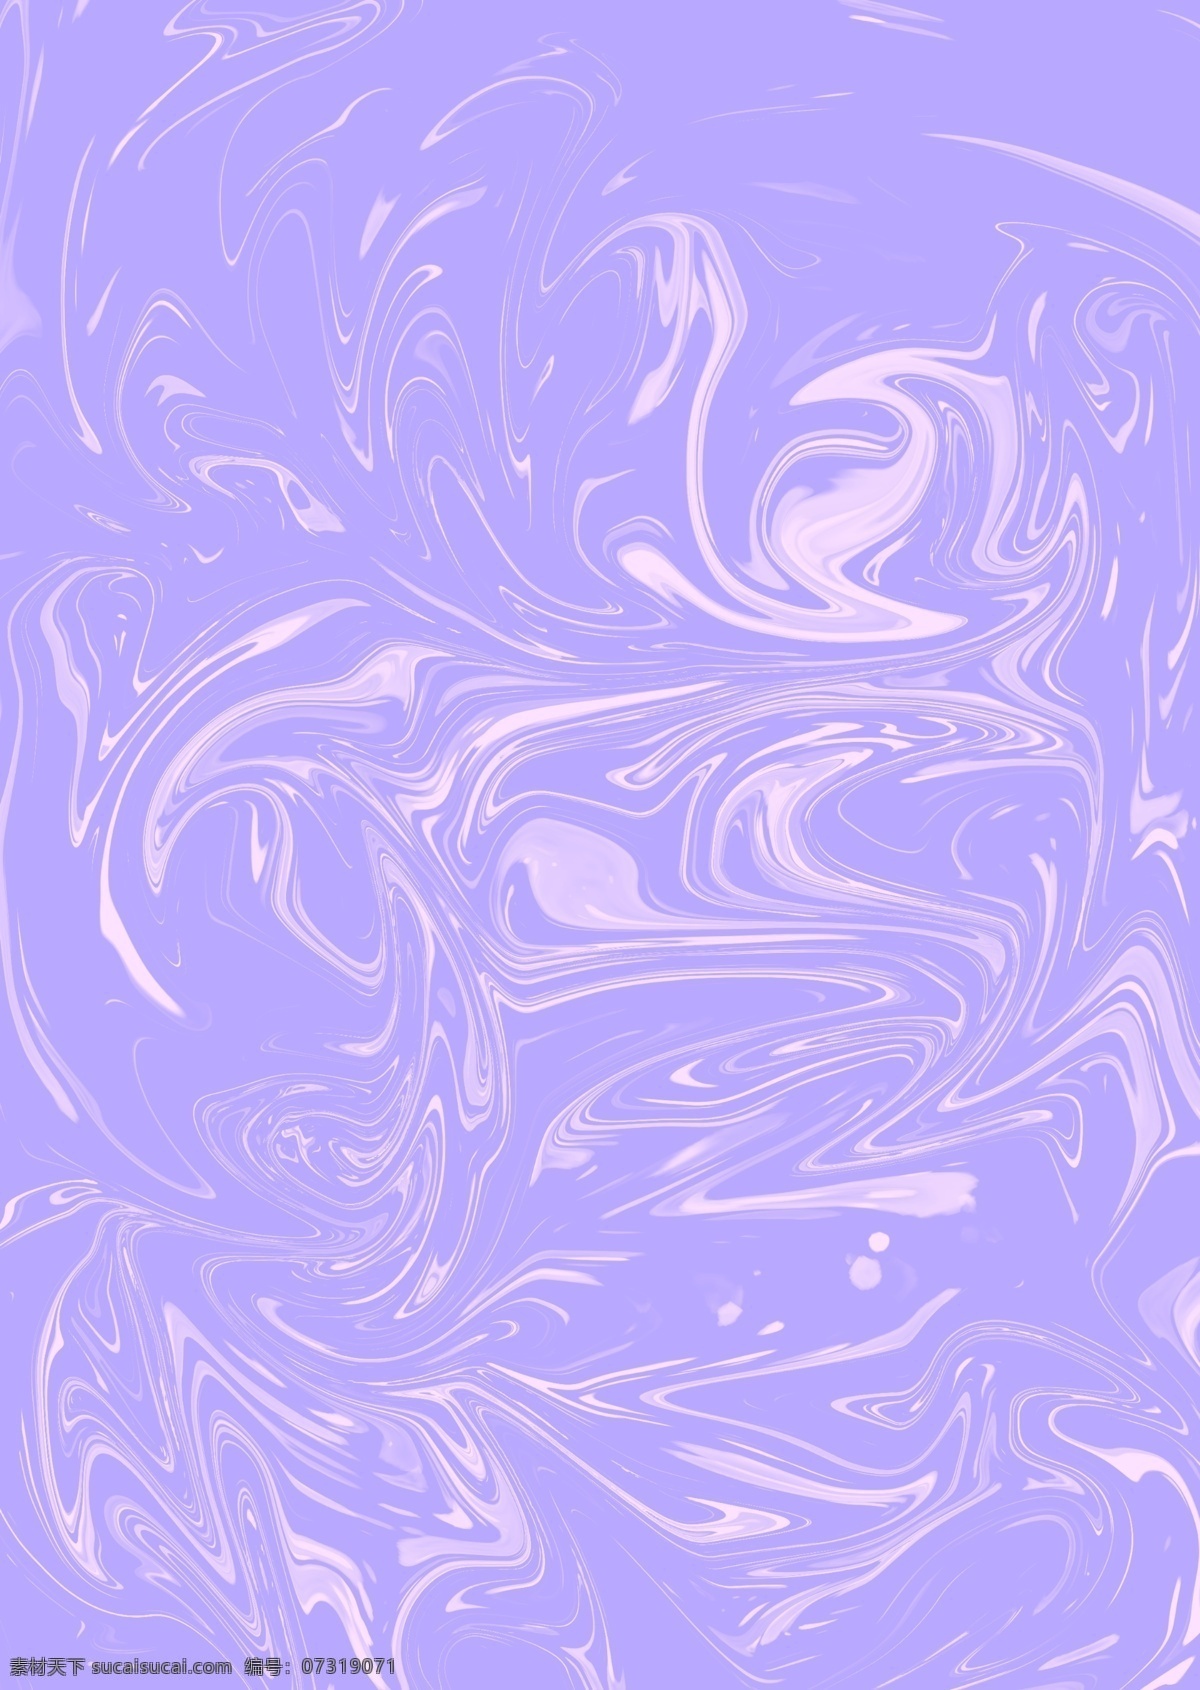 原创 流动 紫色 晕染 玻璃纸 背景 素材图片 背景素材 海报素材 水彩 紫色背景 梦幻 底纹边框 背景底纹